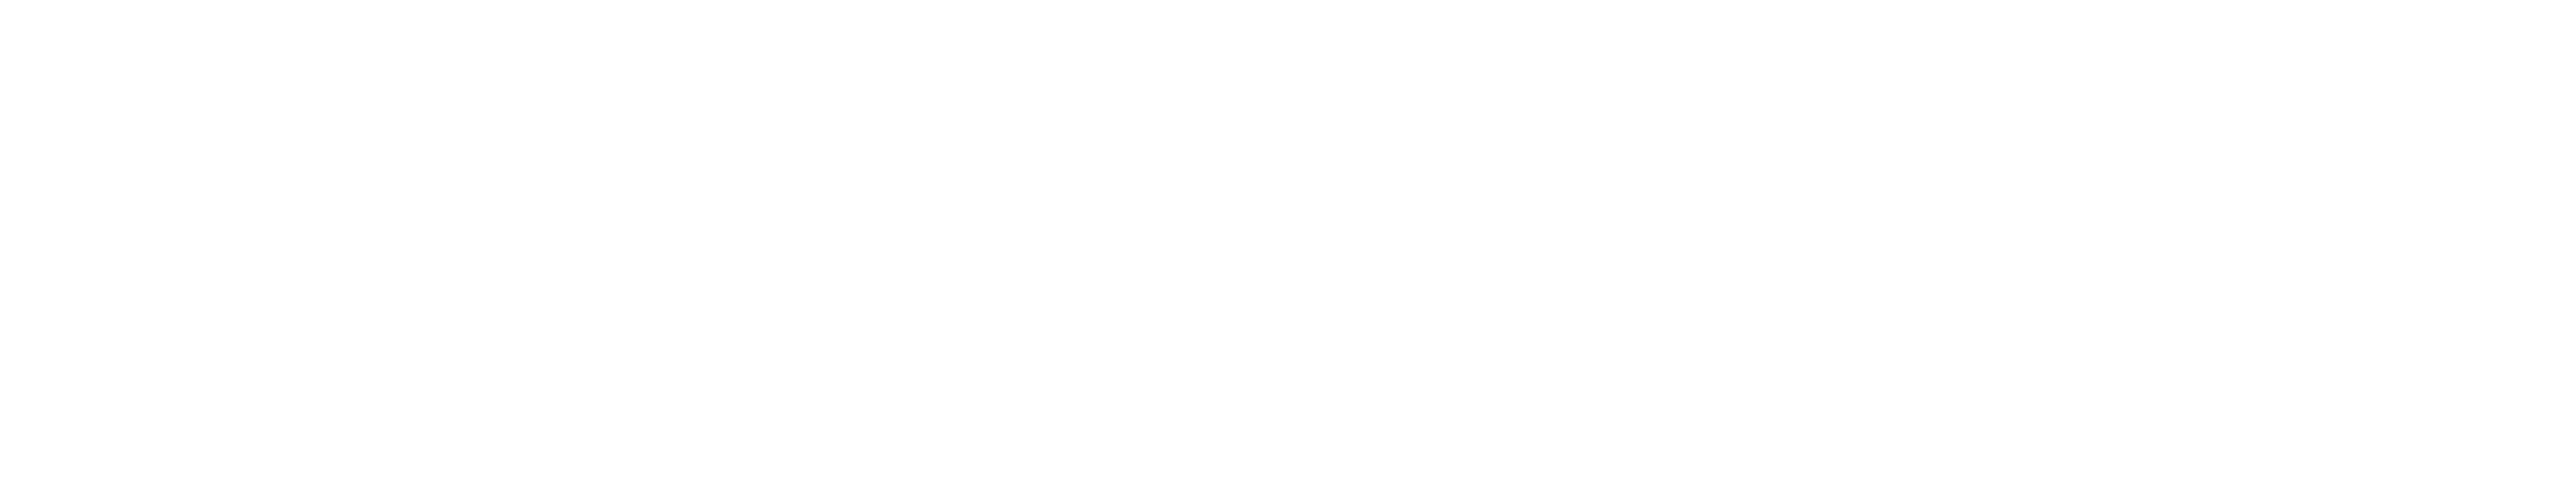 SicoService logo in white